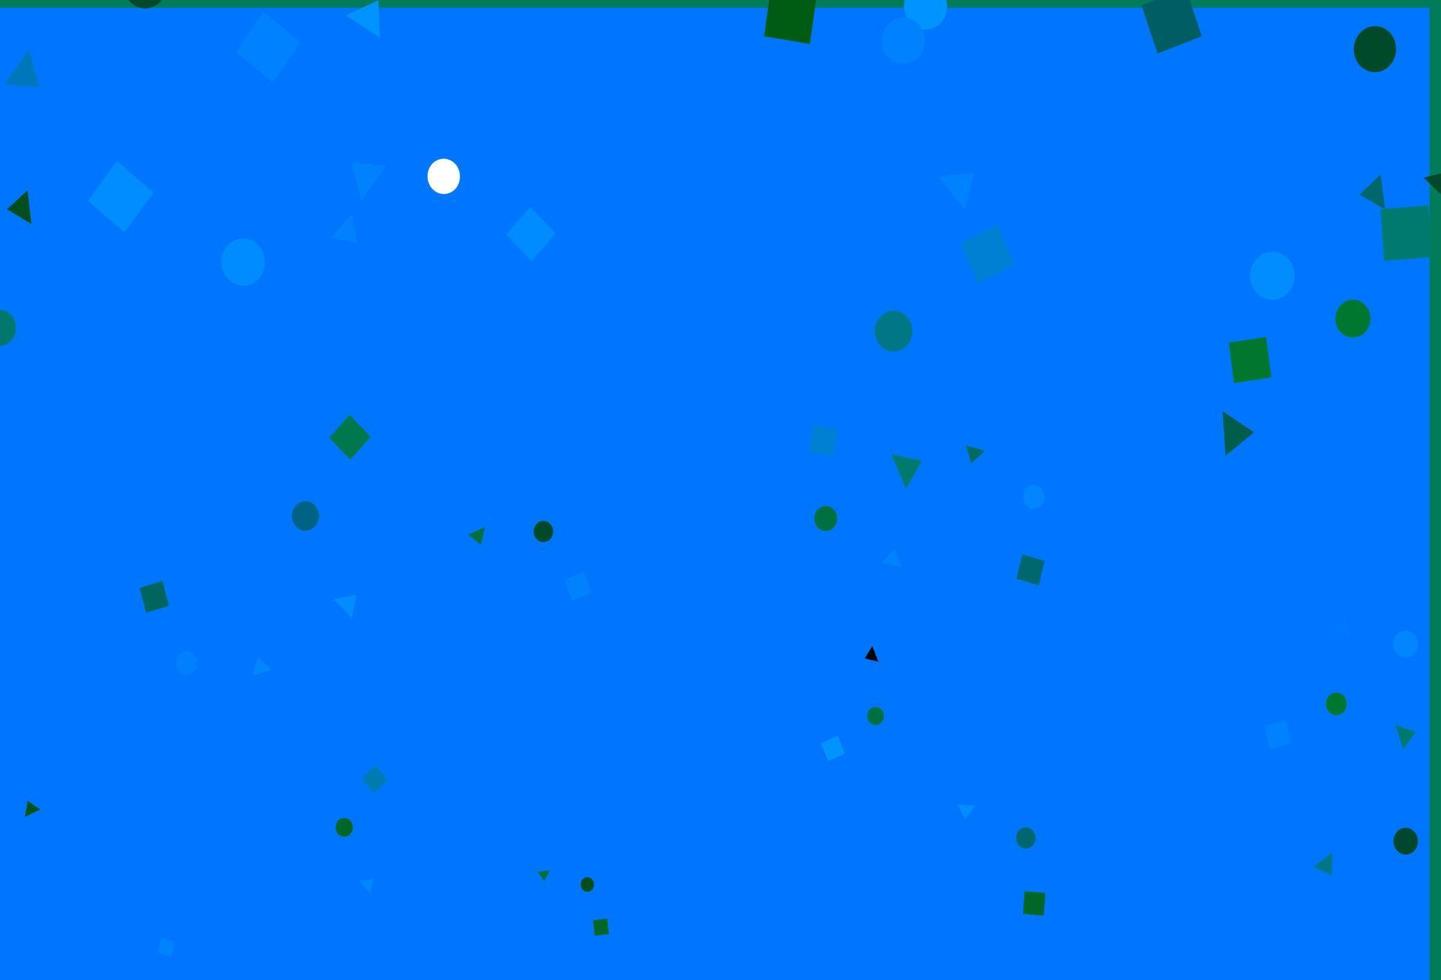 diseño de vector azul claro, verde con círculos, líneas, rectángulos.